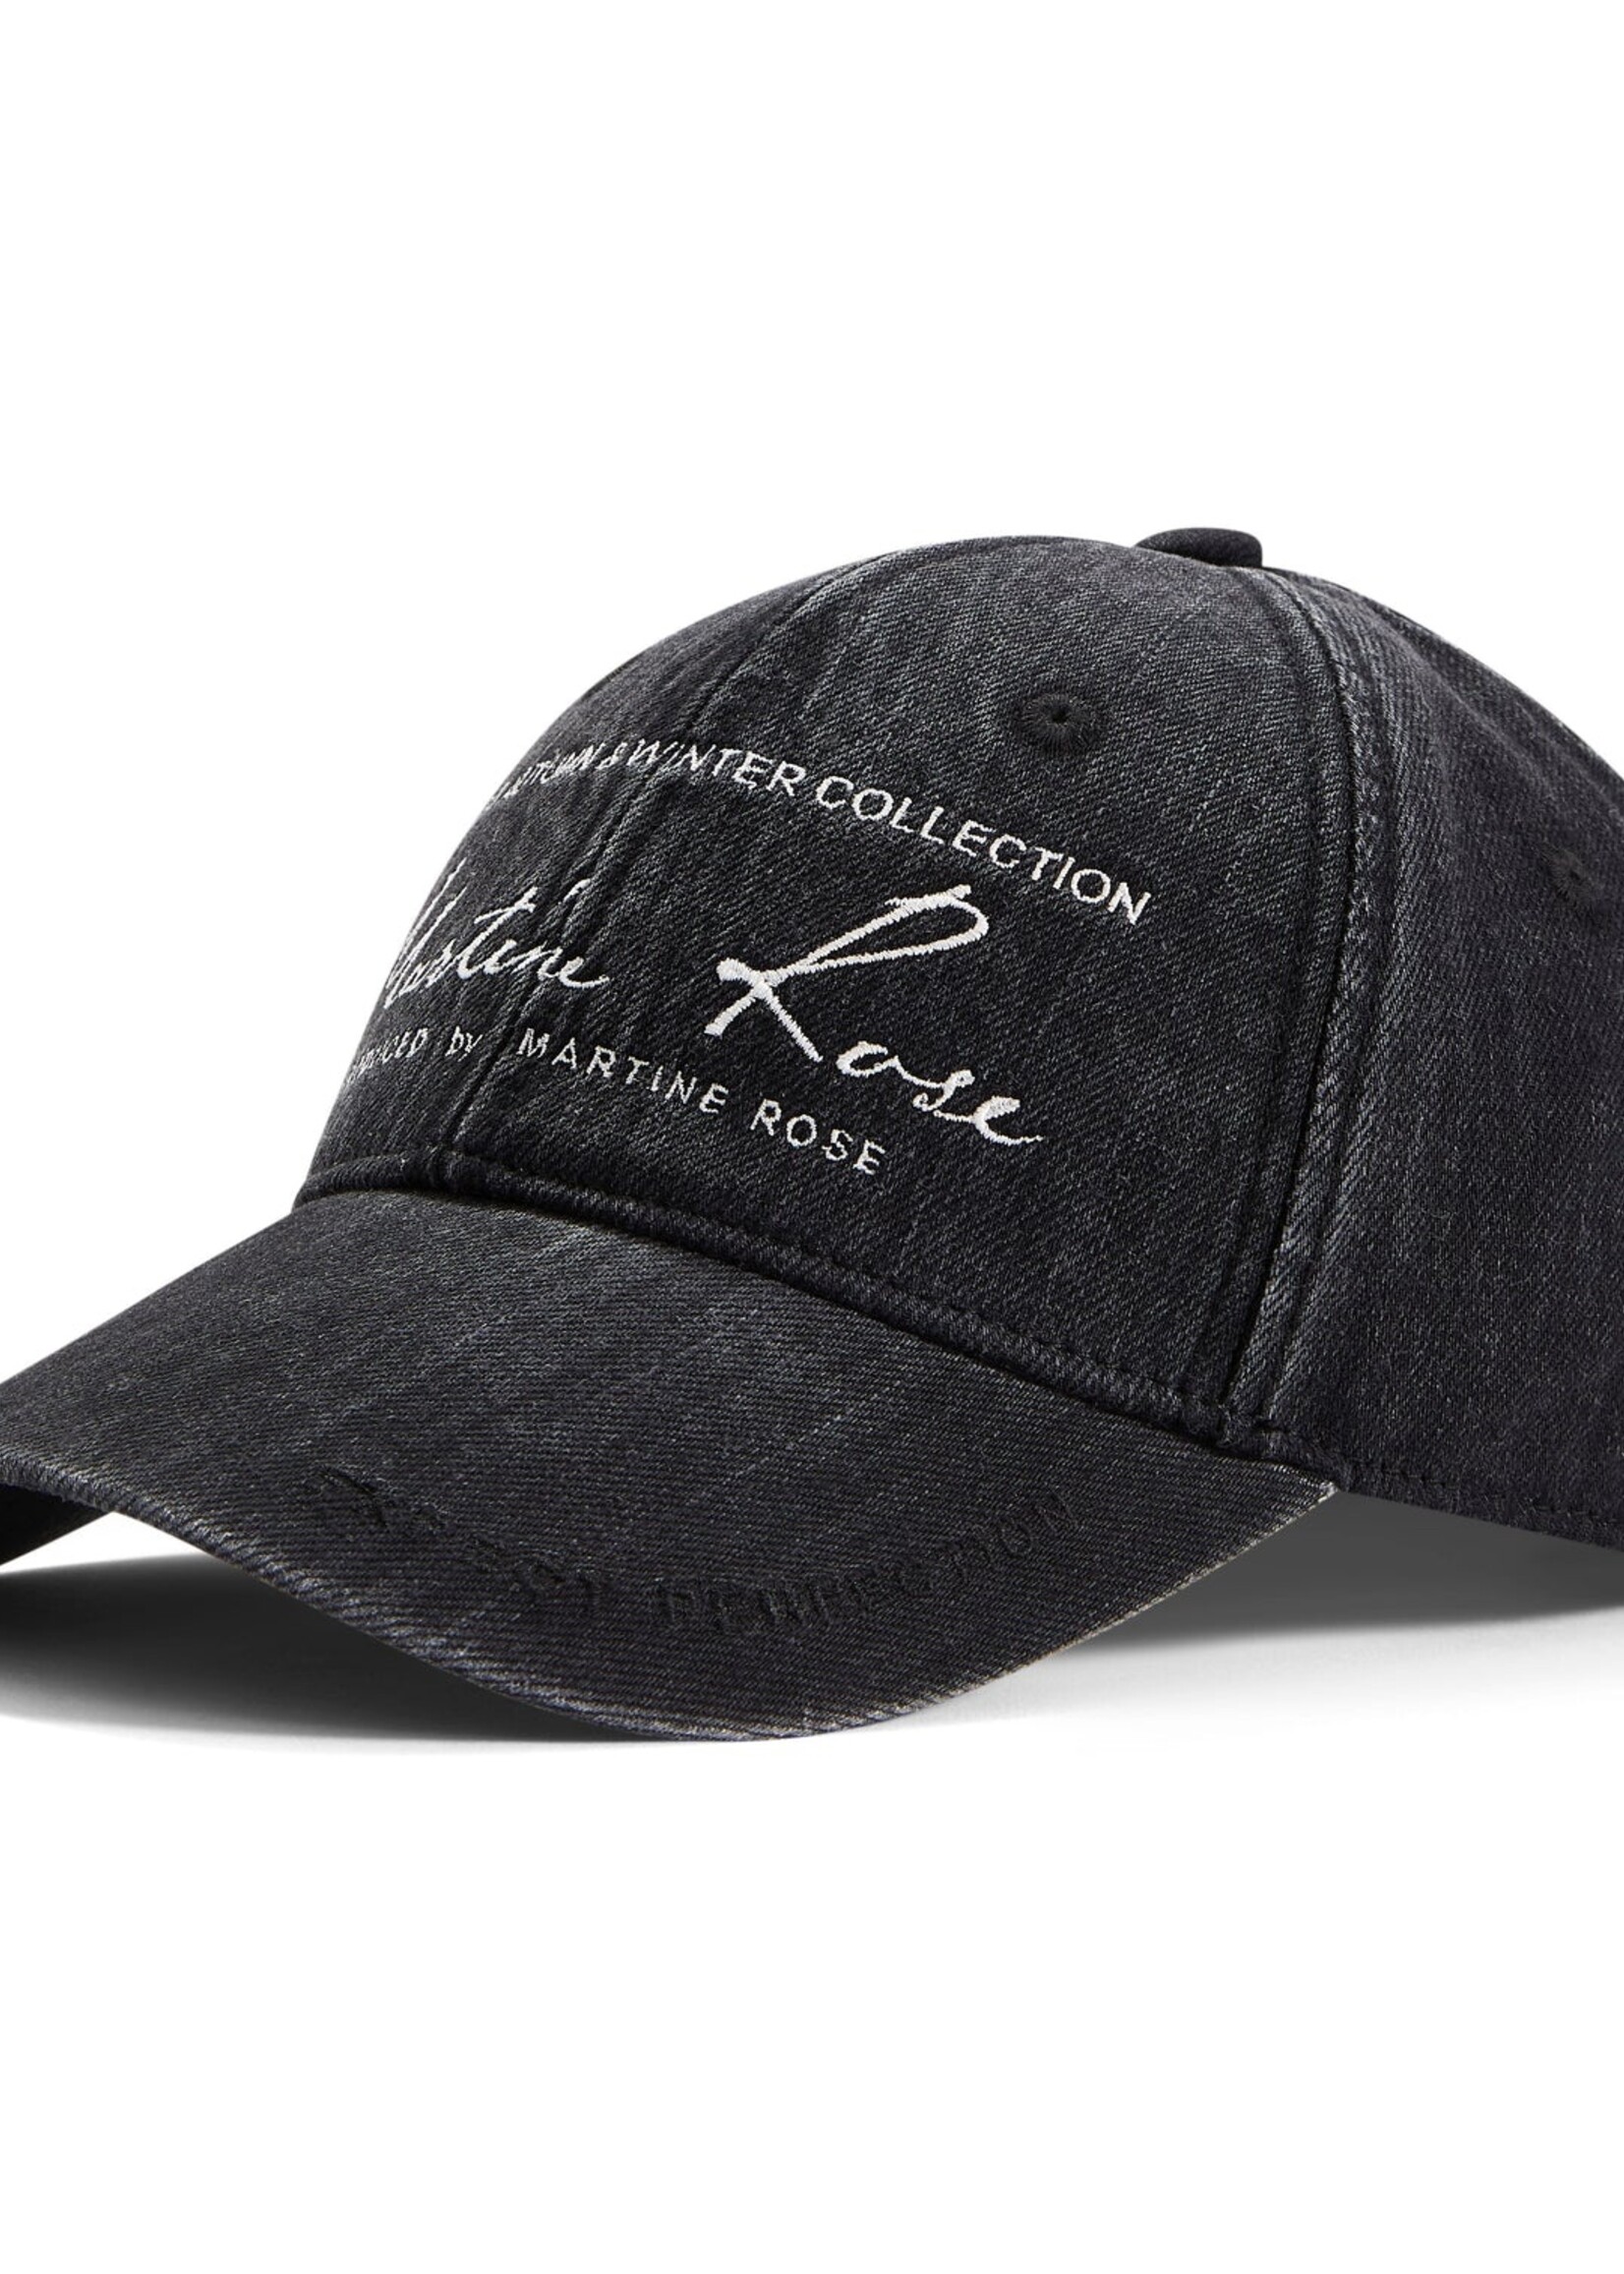 MARTINE ROSE Signature Logo Cap in Black Denim